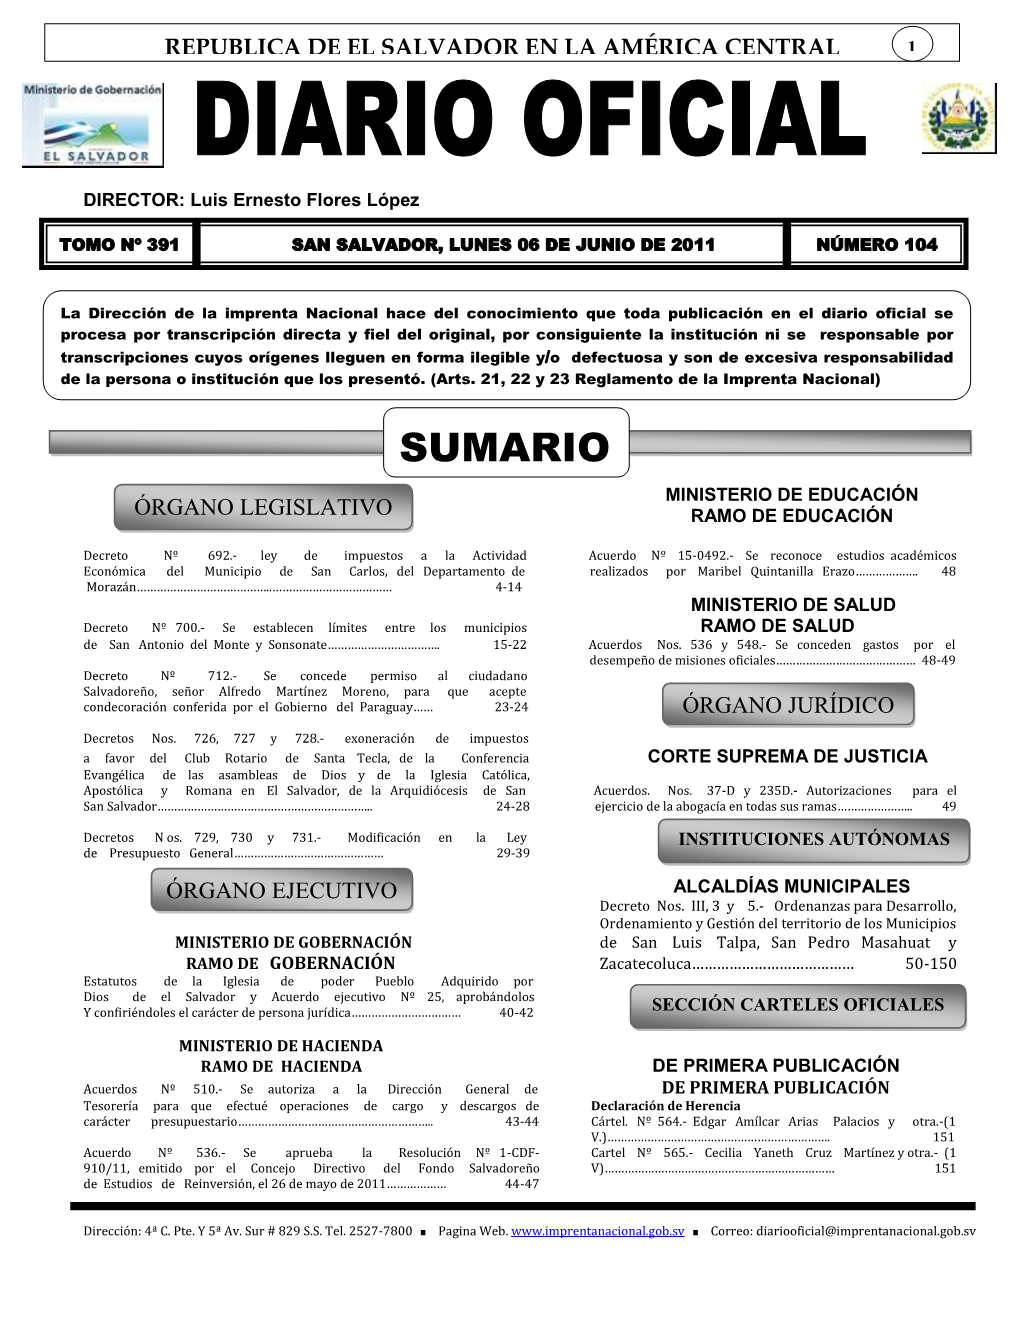 Ordenanza Reguladora Del Desarrollo, Ordenamiento Y Gestión Del Territorio Del Municipio De Zacatecoluca